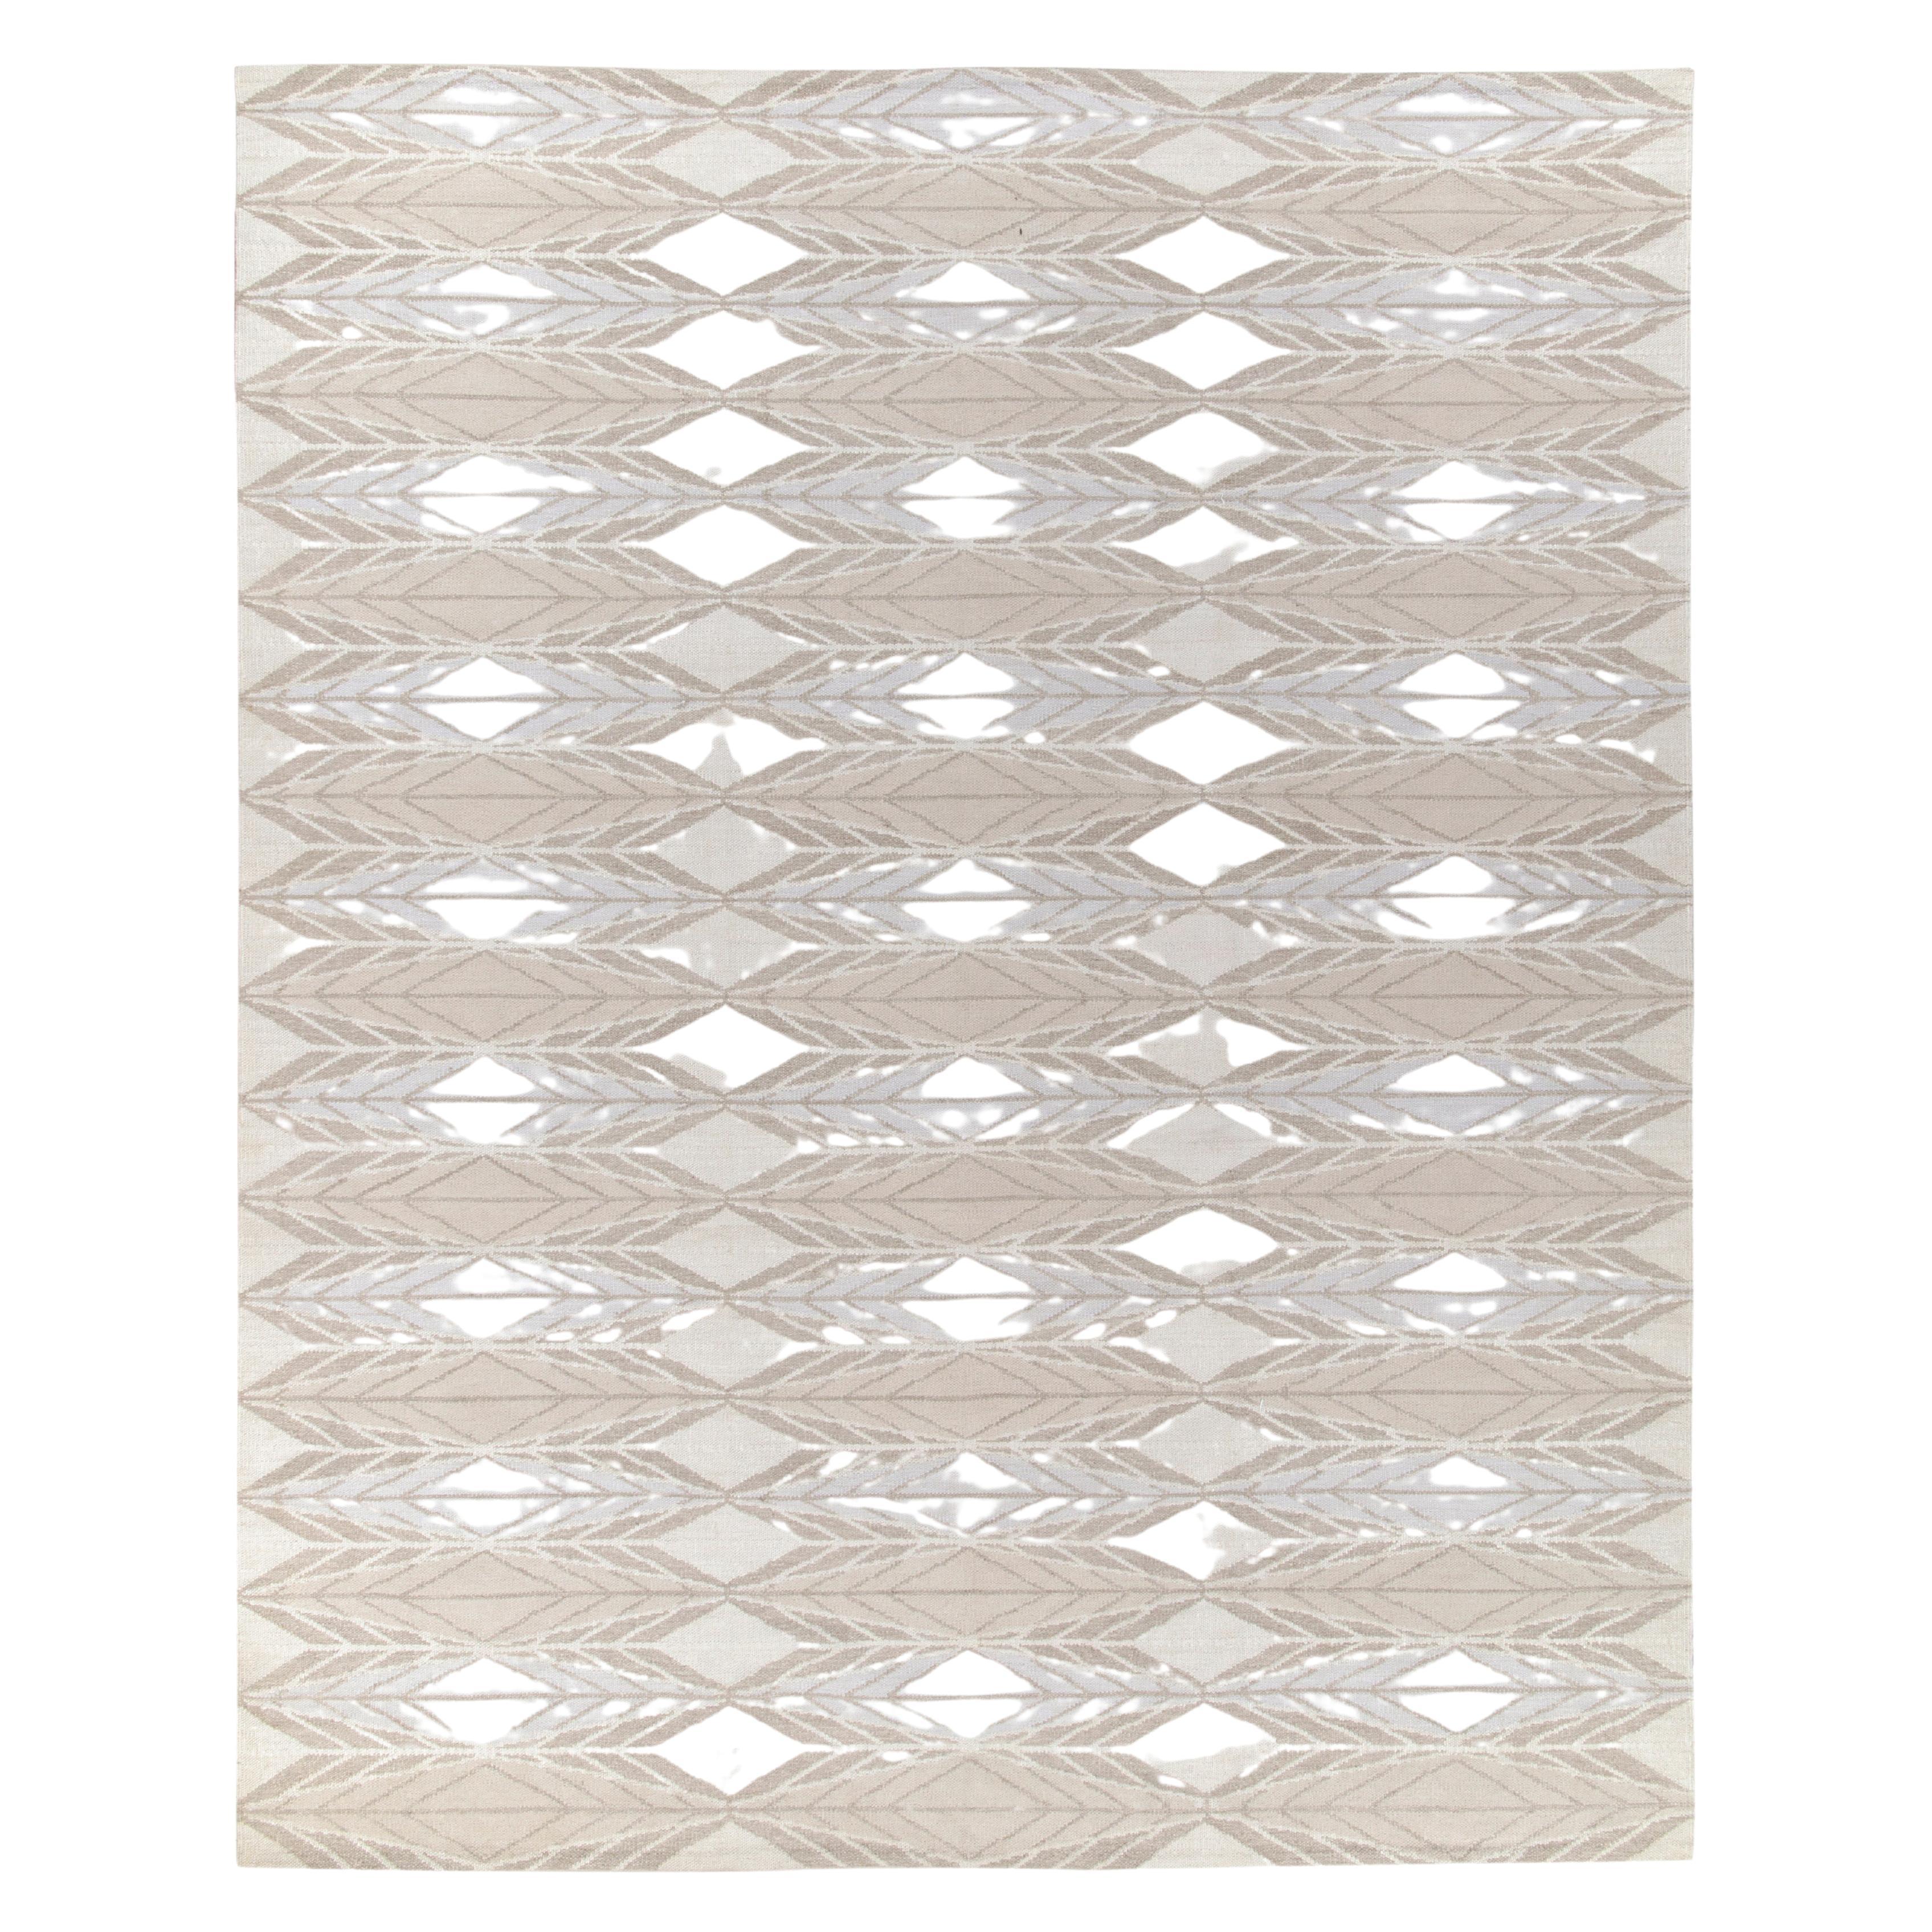 Rug & Kilim's Scandinavian Style Kilim Rug in White, Beige Geometric Pattern